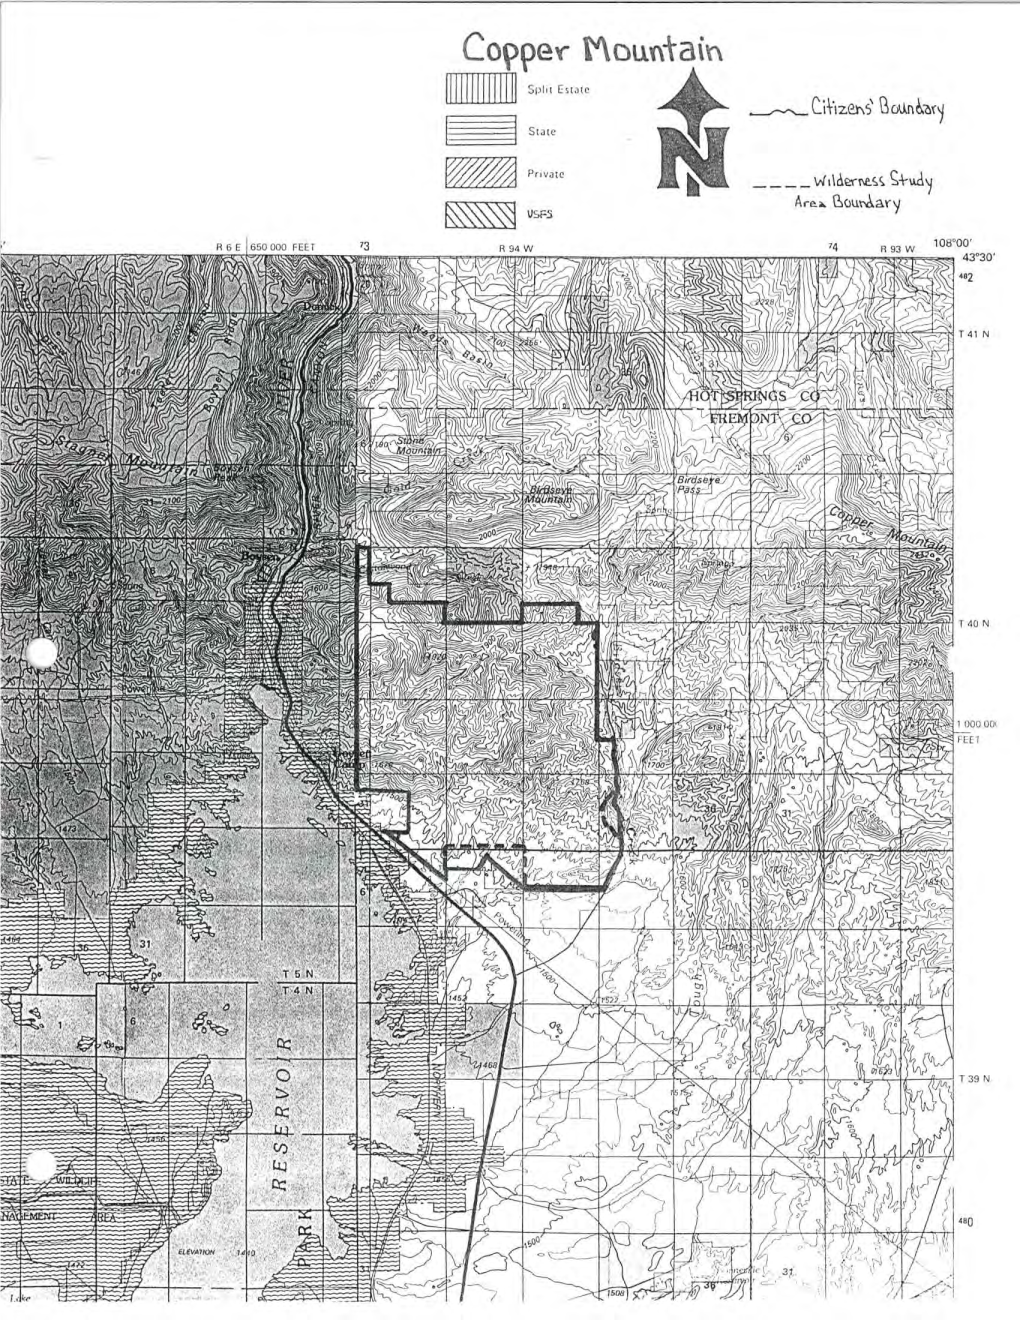 Citizens Wilderness Proposal Blm Lands